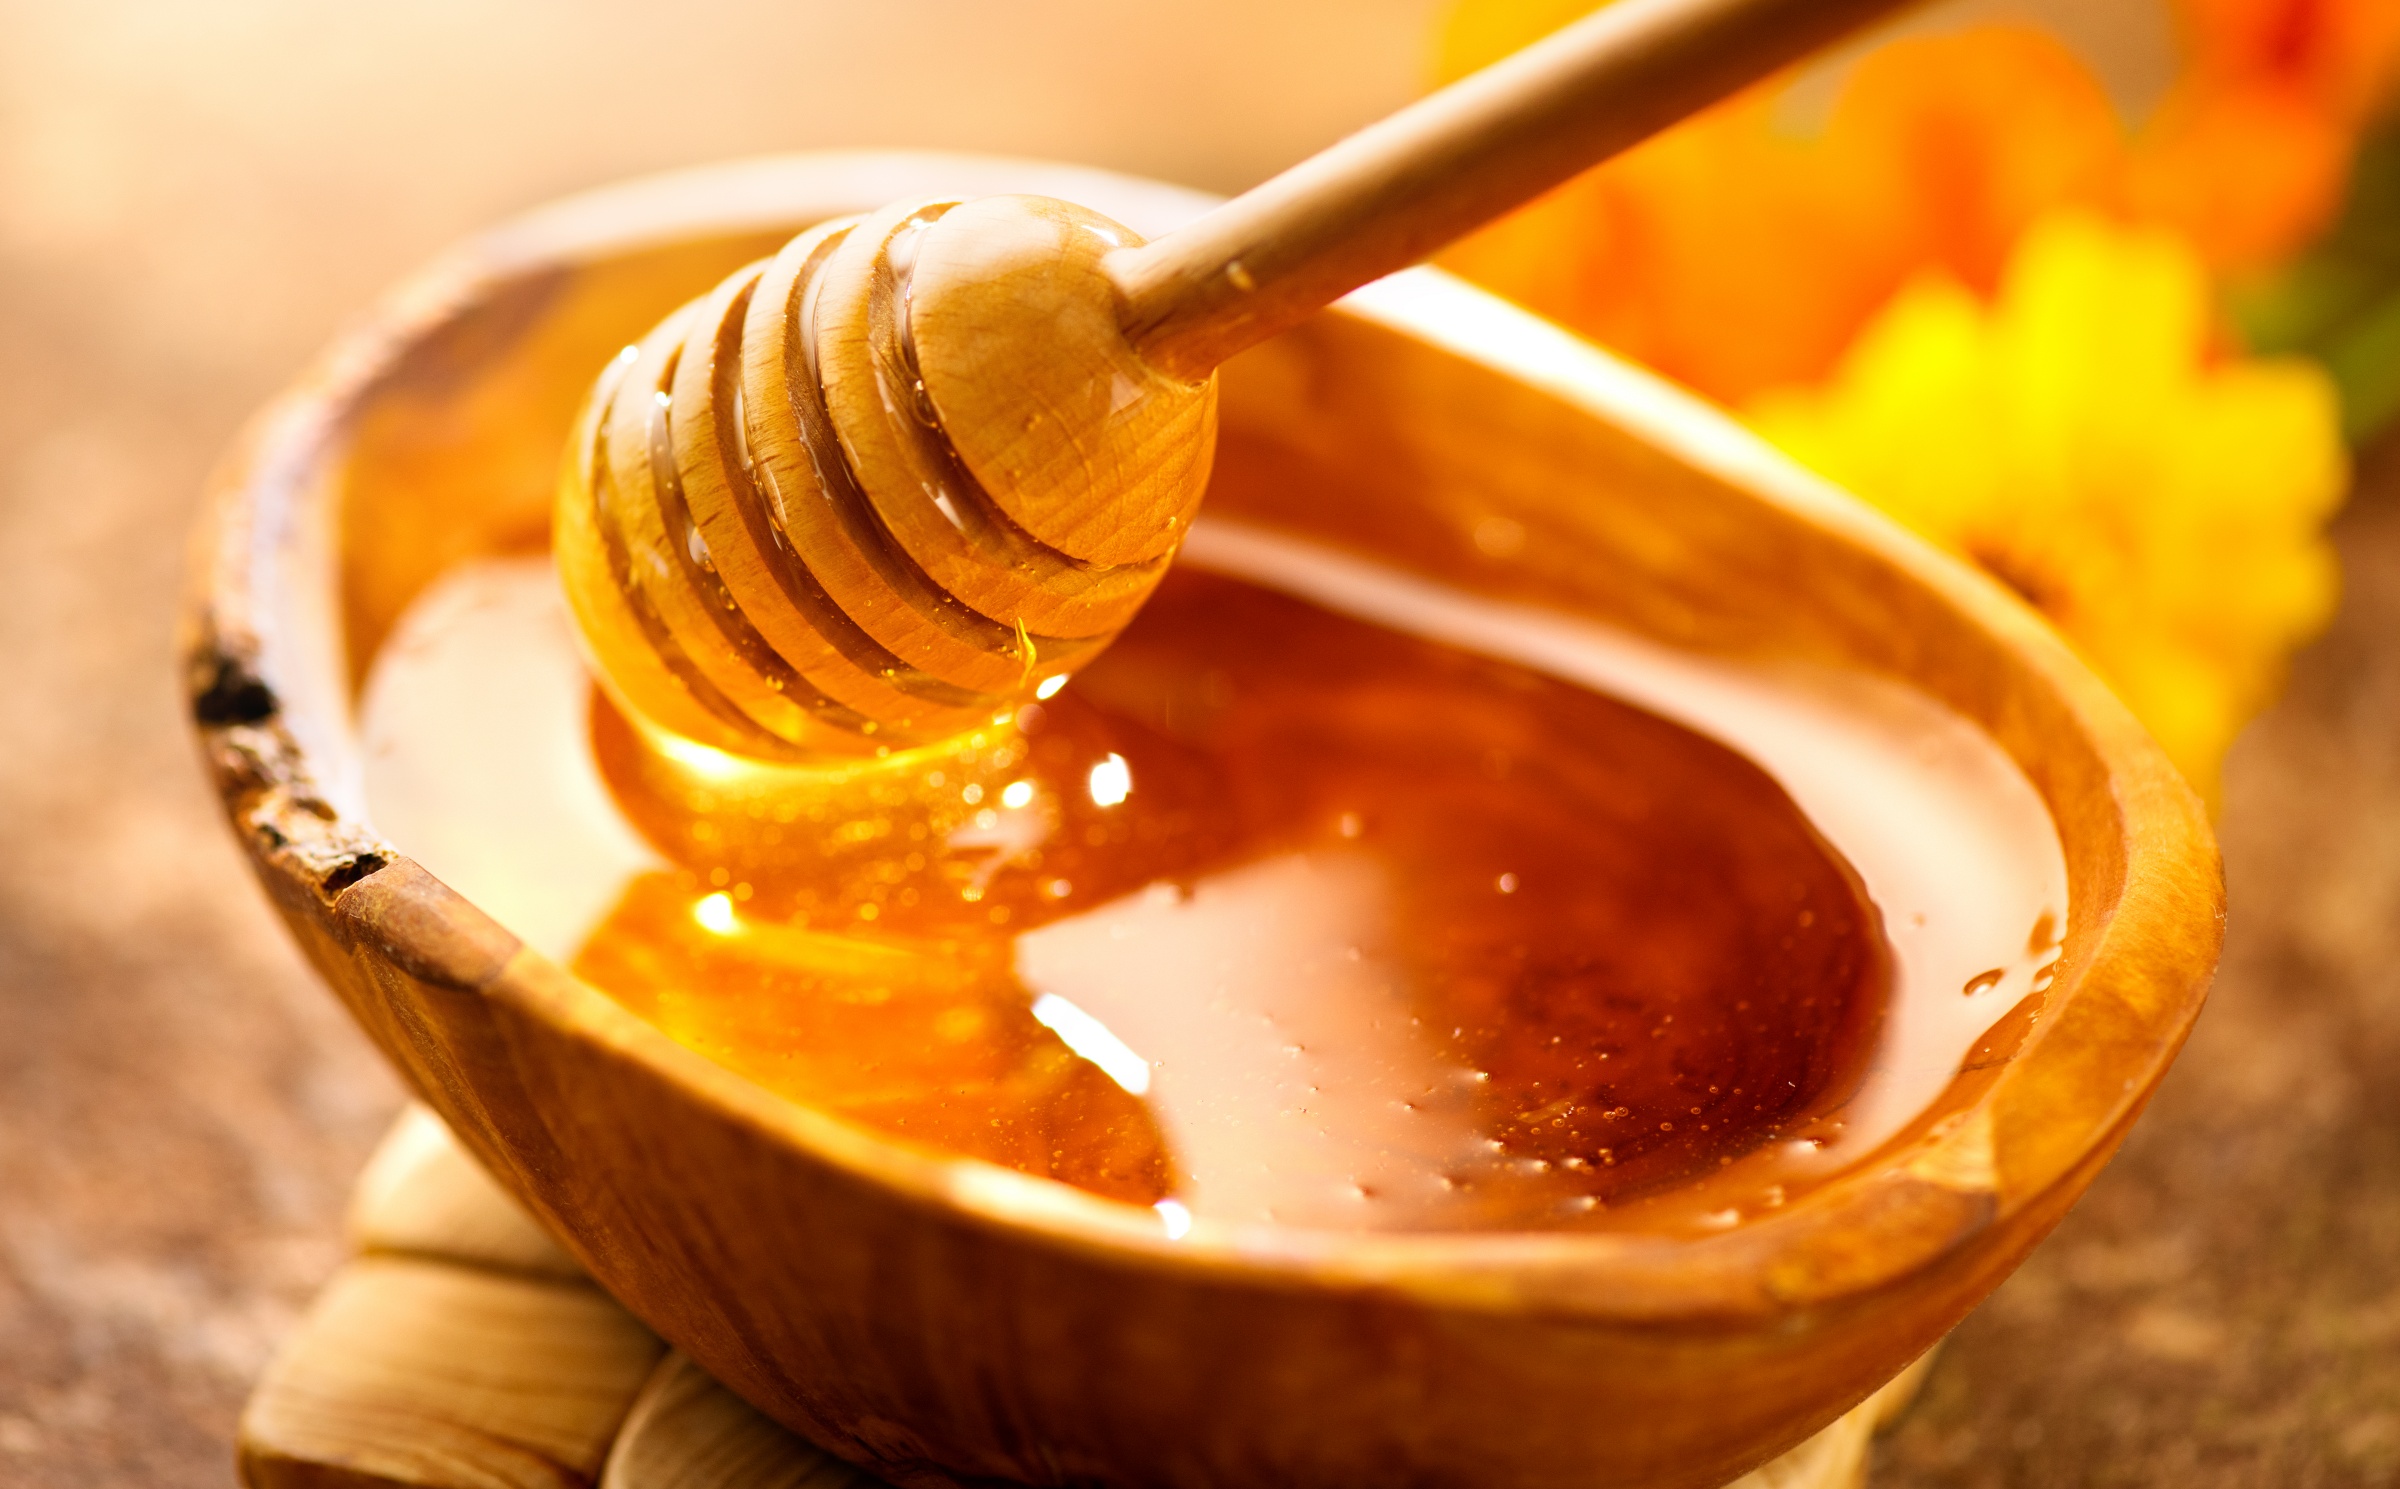 cải thiện sức khỏe đường ruột. Lượng axit béo trong mật ong thúc đẩy nhu động ruột, giúp cải thiện tiêu hóa